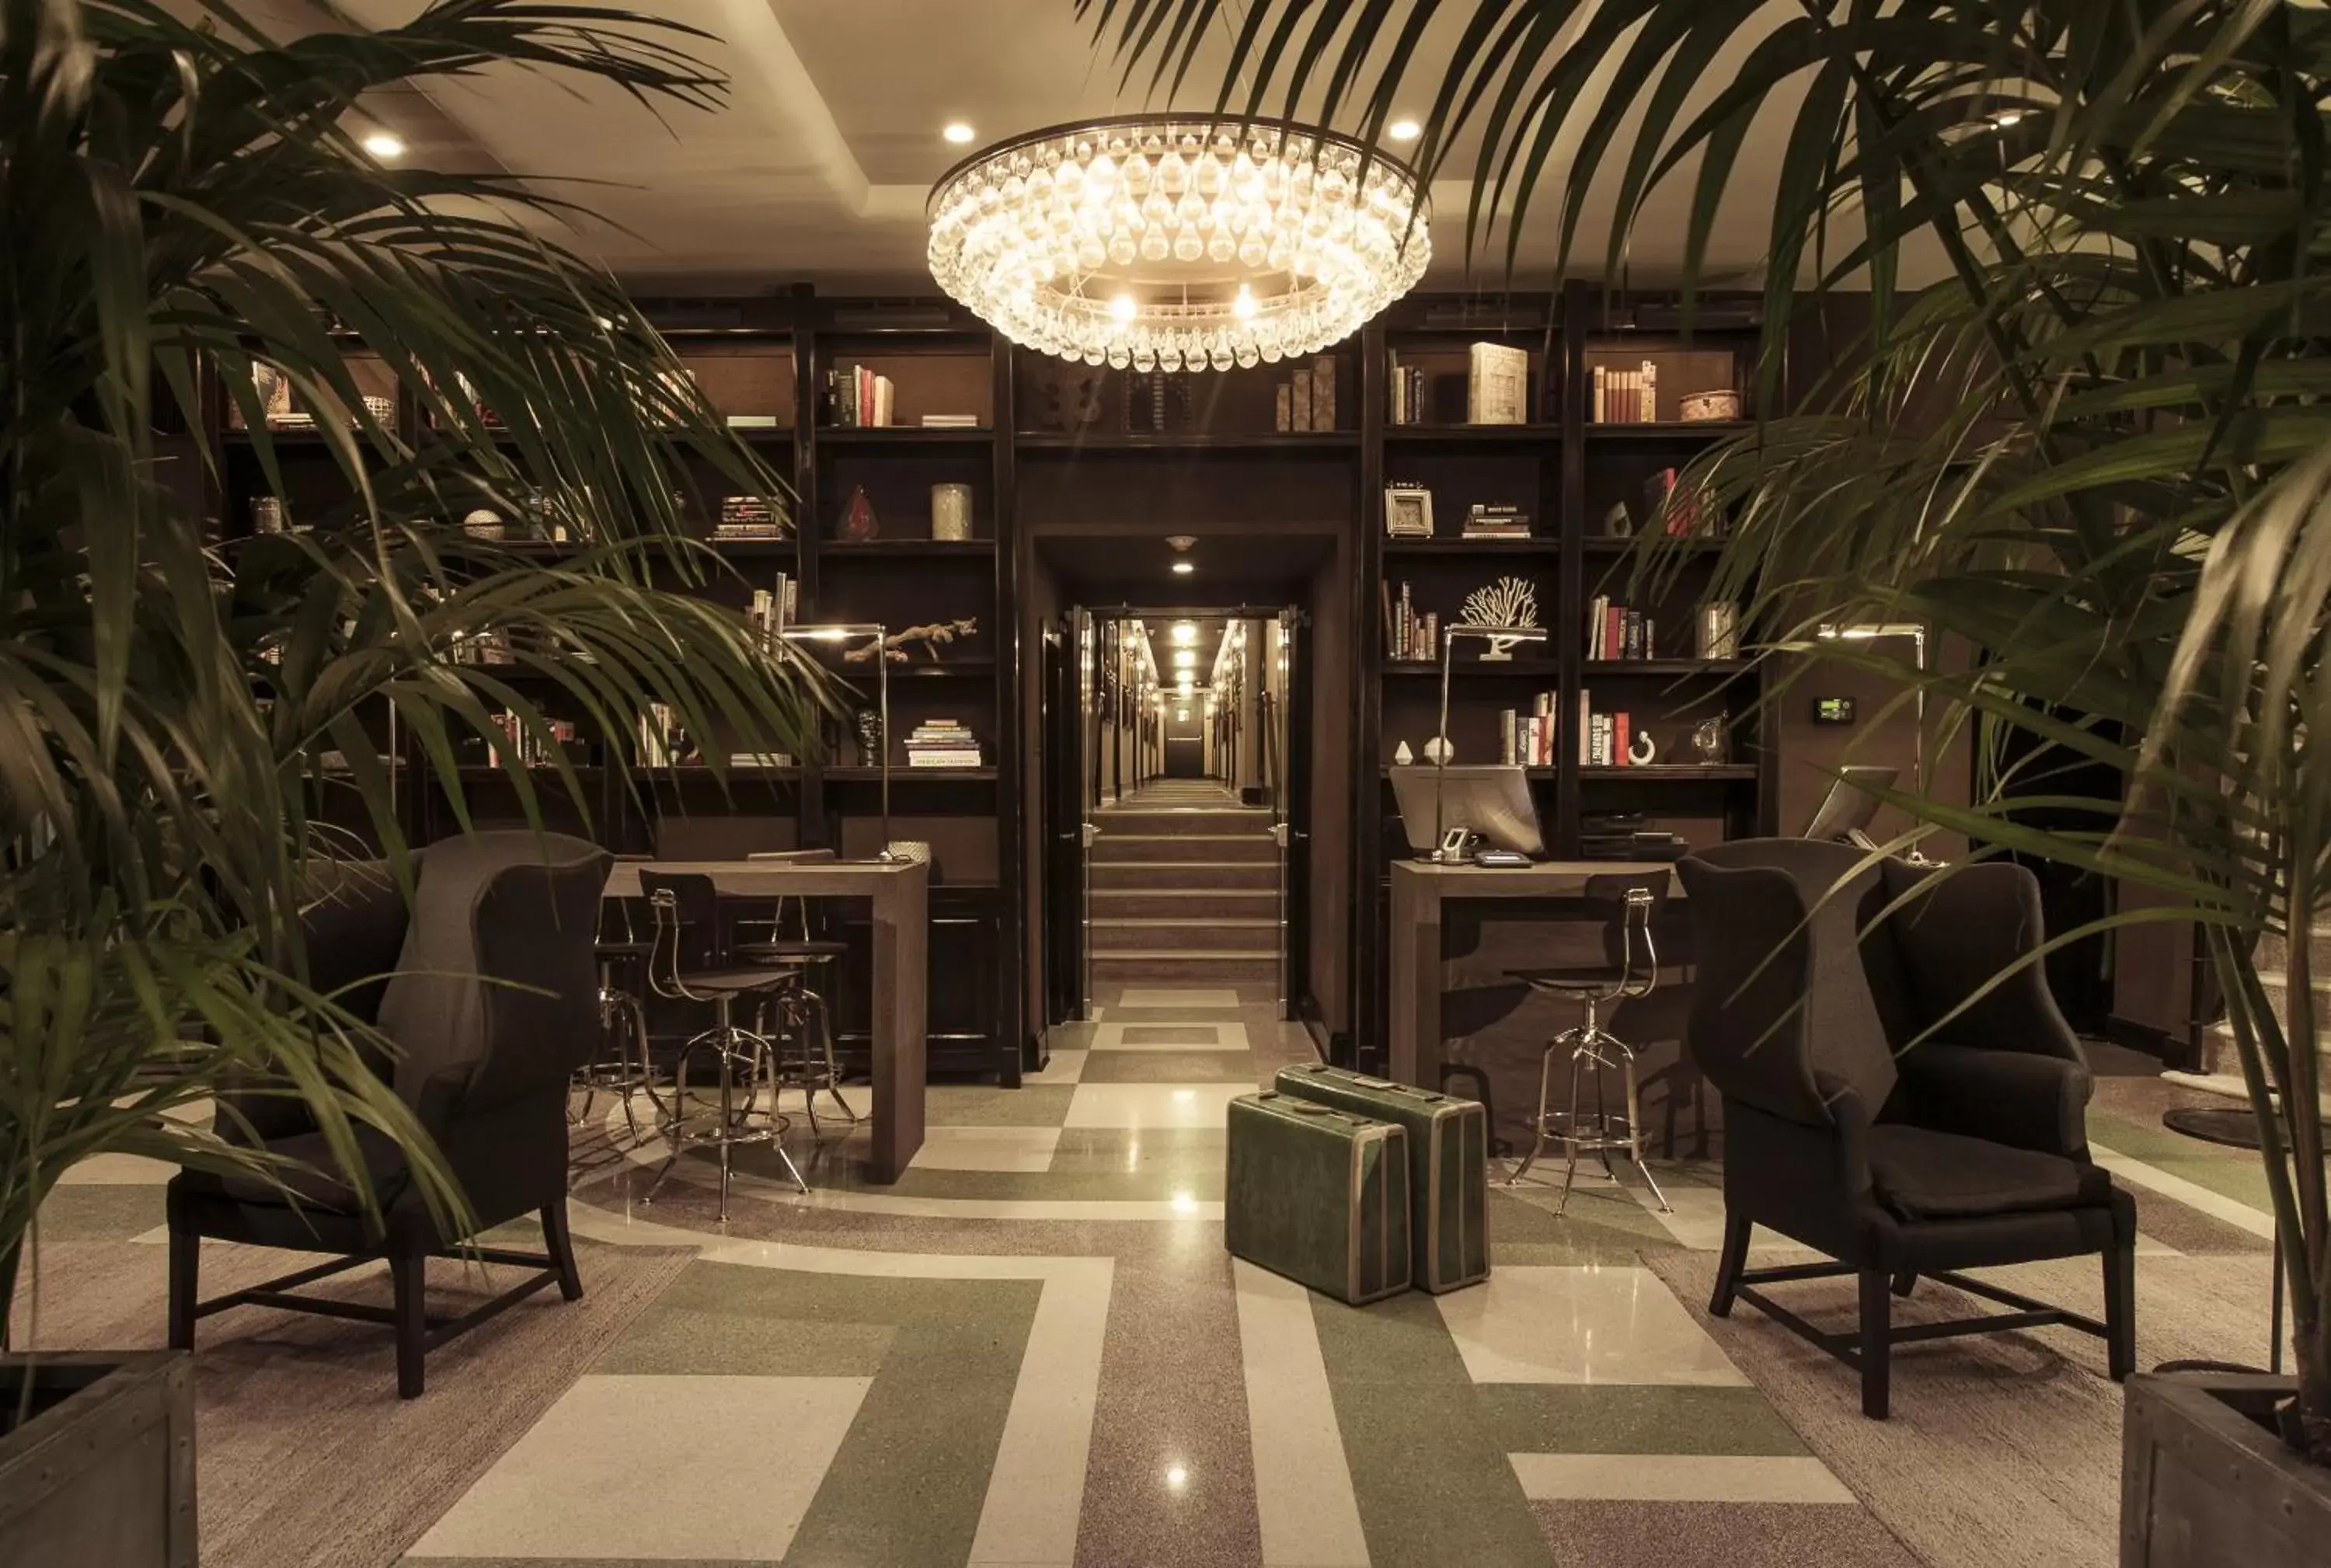 Lobby or reception in Shepley South Beach Hotel